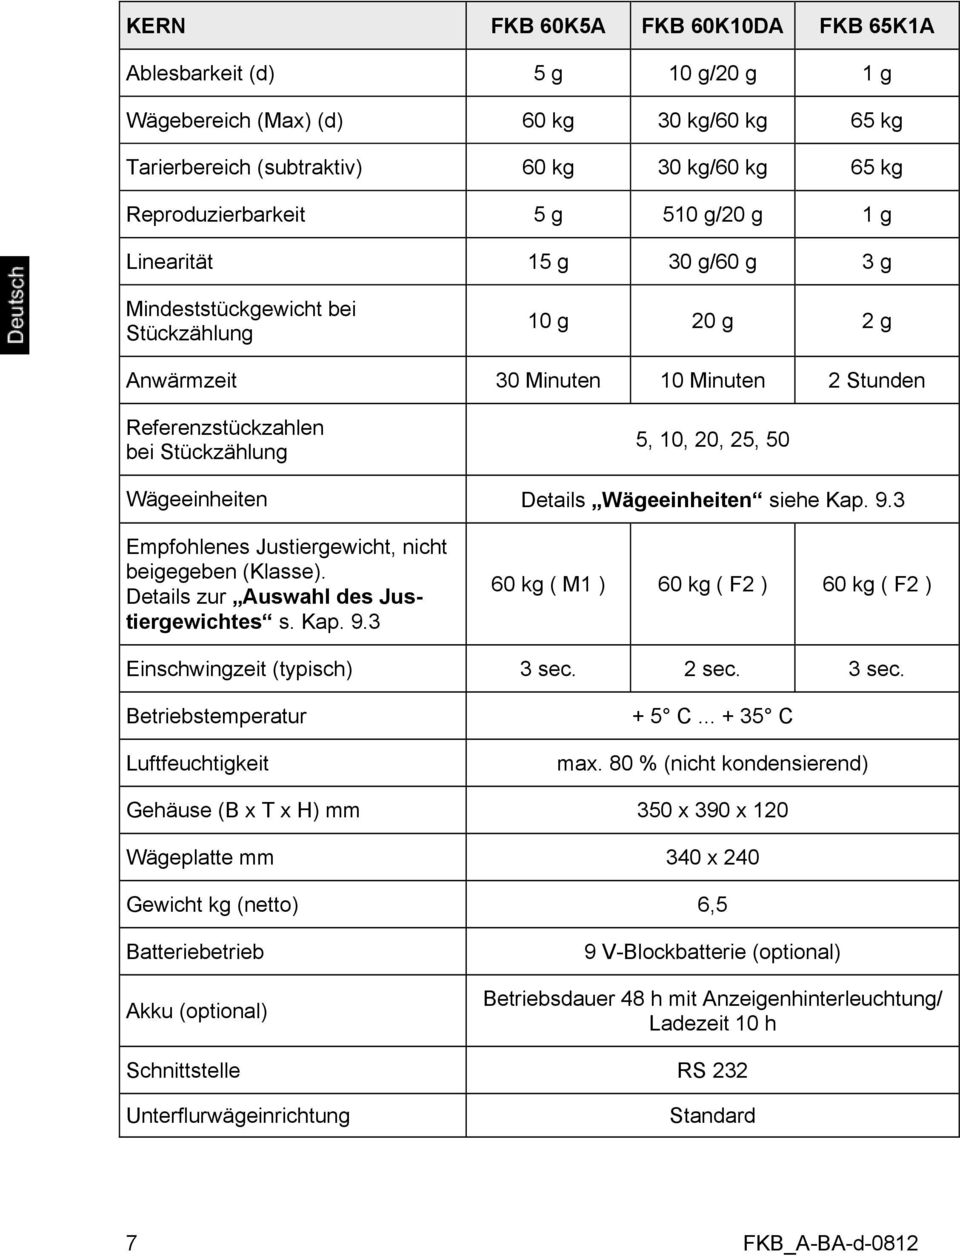 Wägeeinheiten Details Wägeeinheiten siehe Kap. 9.3 Empfohlenes Justiergewicht, nicht beigegeben (Klasse). Details zur Auswahl des Justiergewichtes s. Kap. 9.3 60 kg ( M1 ) 60 kg ( F2 ) 60 kg ( F2 ) Einschwingzeit (typisch) 3 sec.